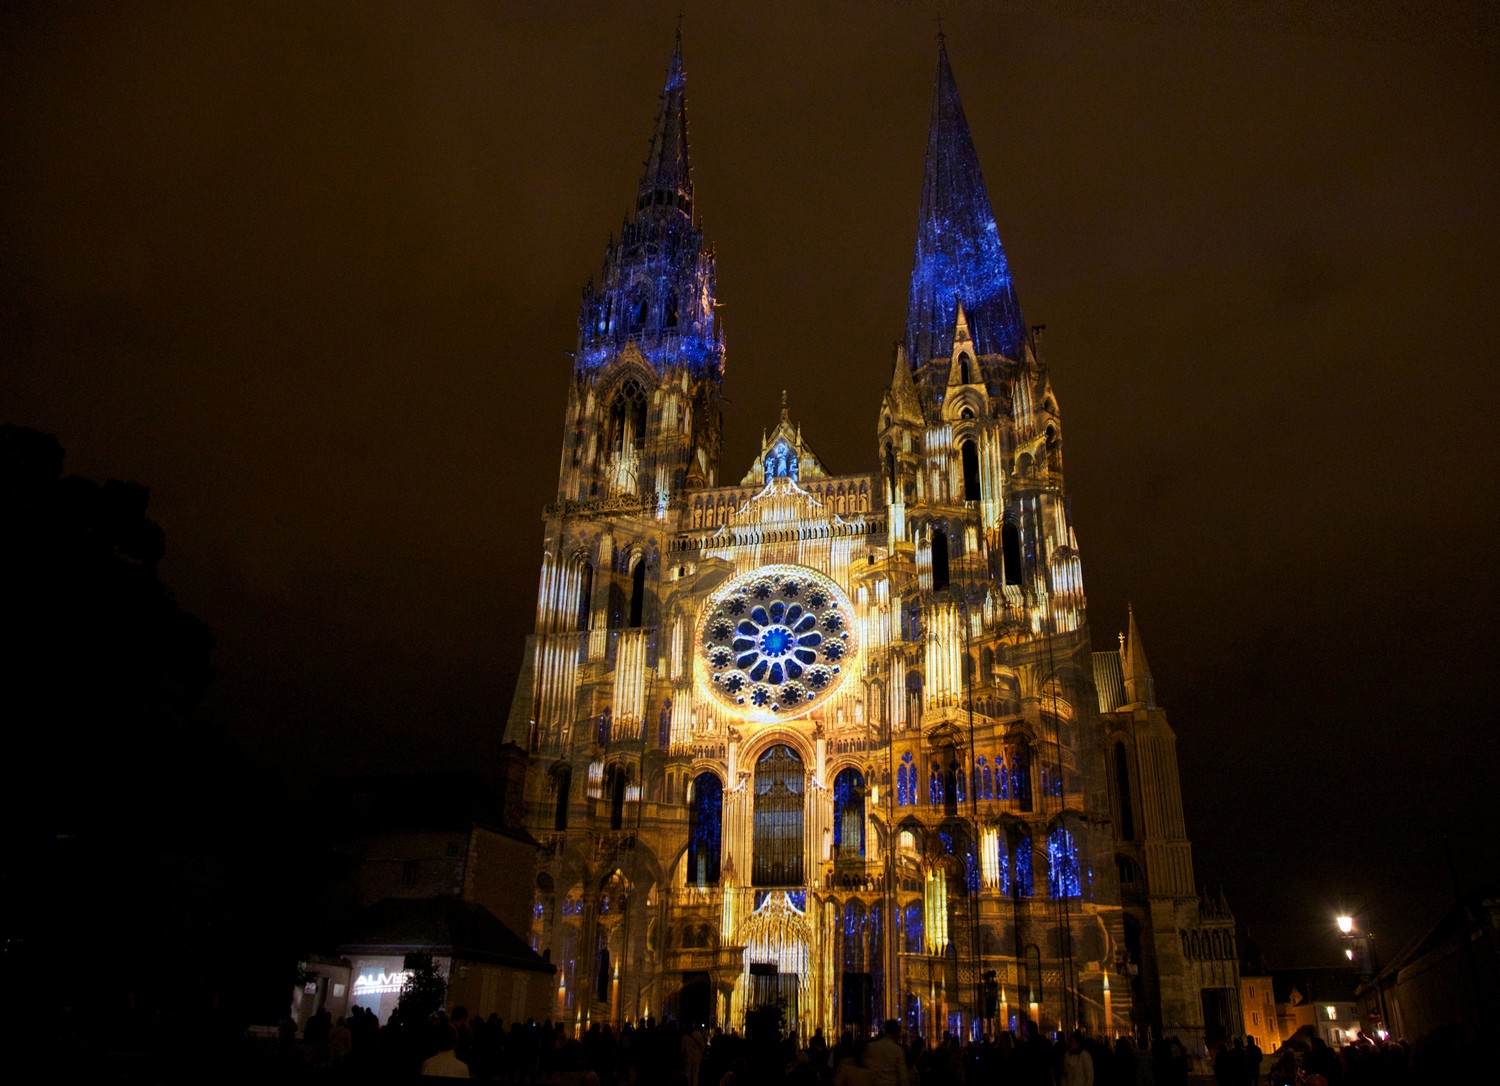 Chartres en lumieres portail royal l orgue dore bis copyright spectaculaires les allumeurs d images photo m anglada